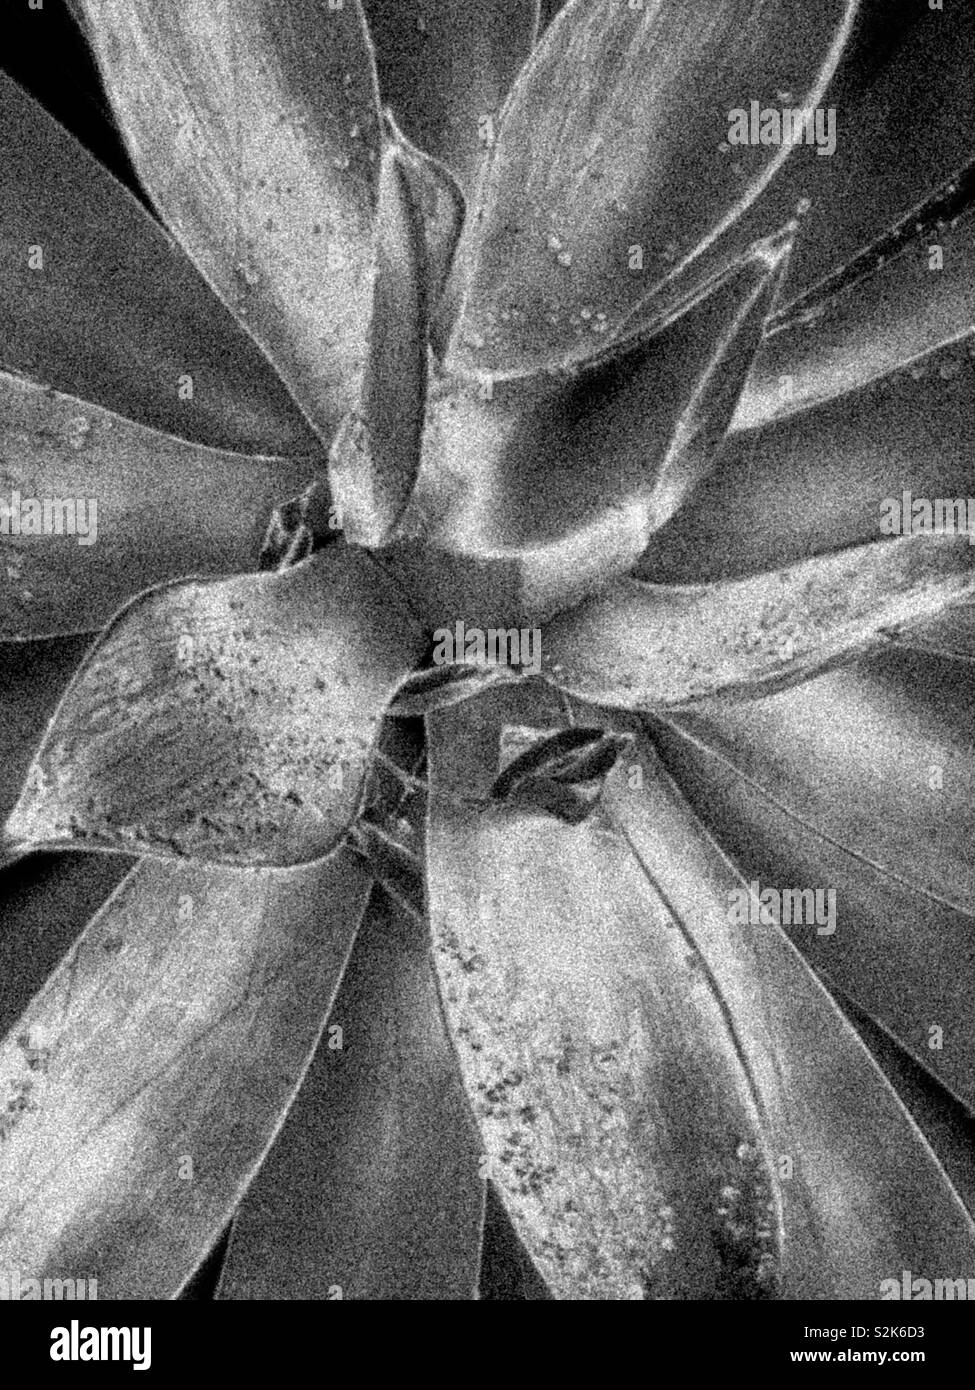 龍舌蘭科之翡翠盤 / Agave attenuata Salm-Dyck in black and white Stock Photo